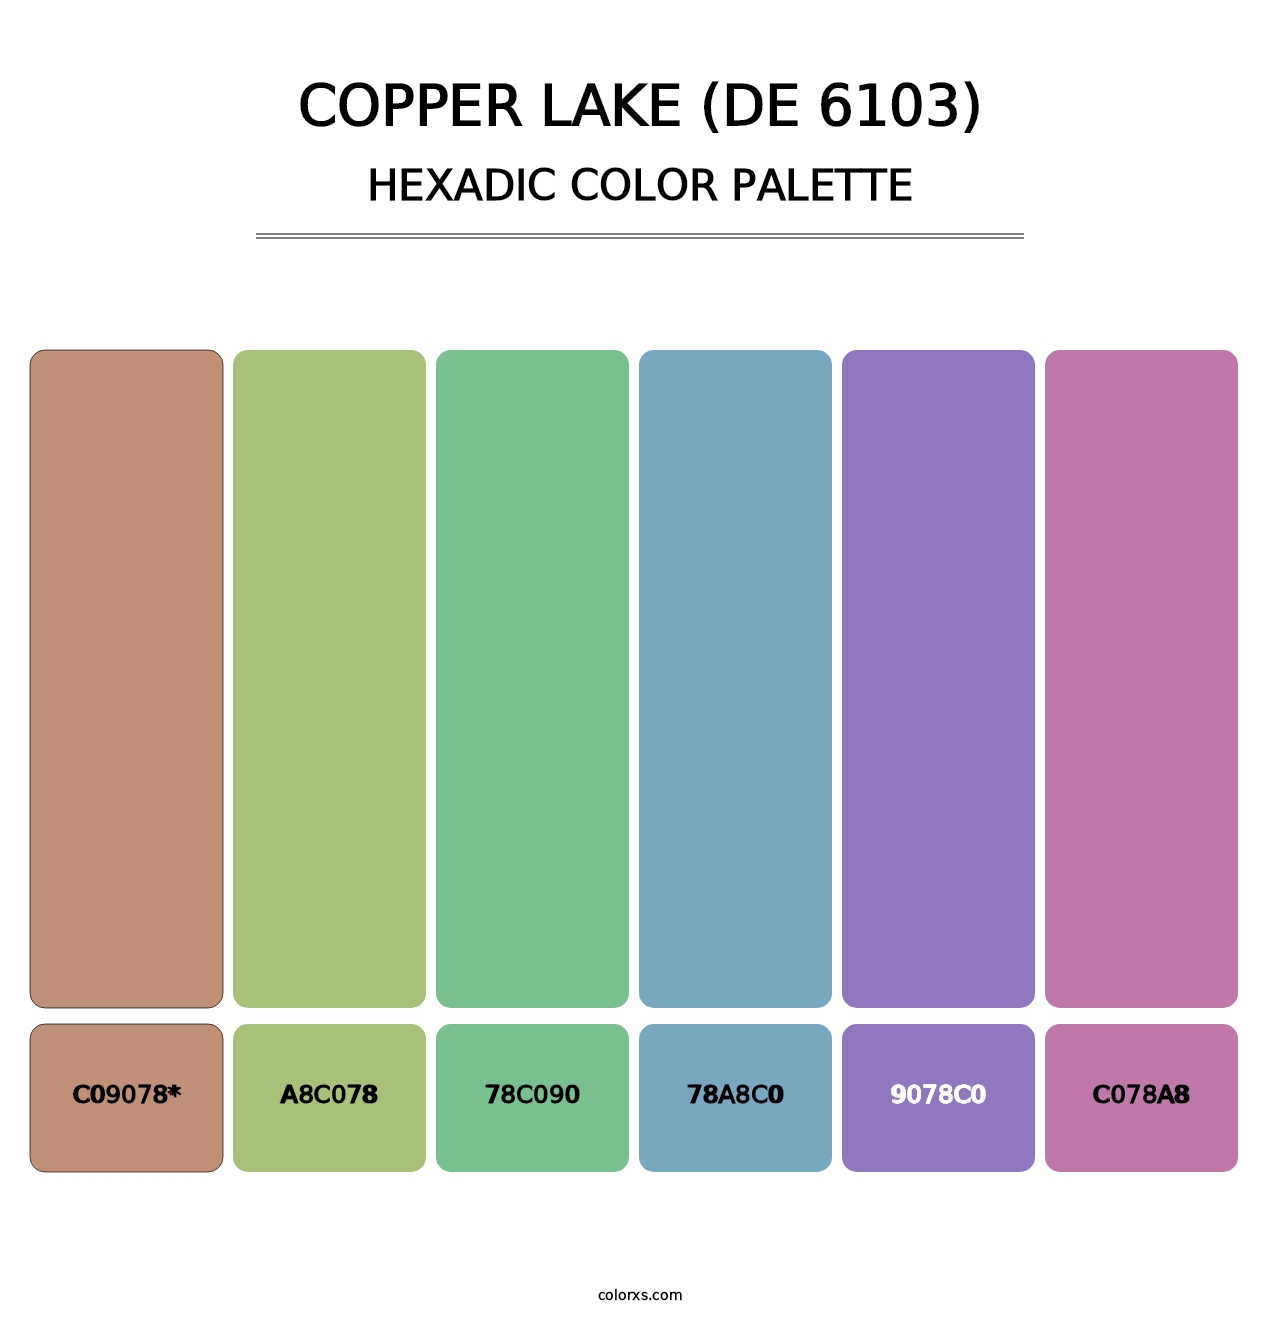 Copper Lake (DE 6103) - Hexadic Color Palette